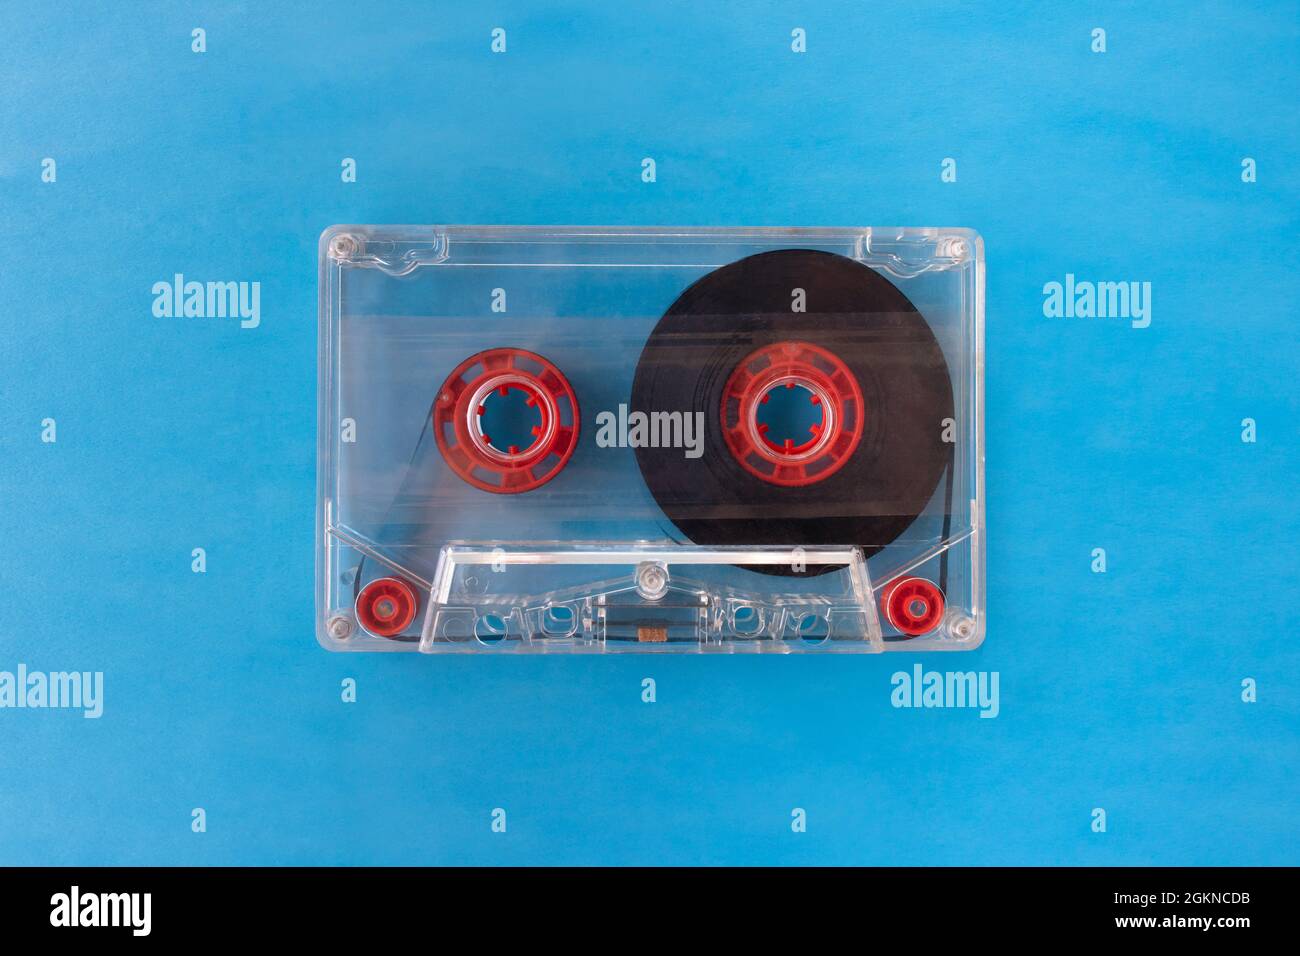 Une cassette audio compacte transparente avec bande visible et rouleaux internes rouges isolés sur fond bleu. Plan d'affichage de la vue de dessus en bas avec espace pour le texte Banque D'Images